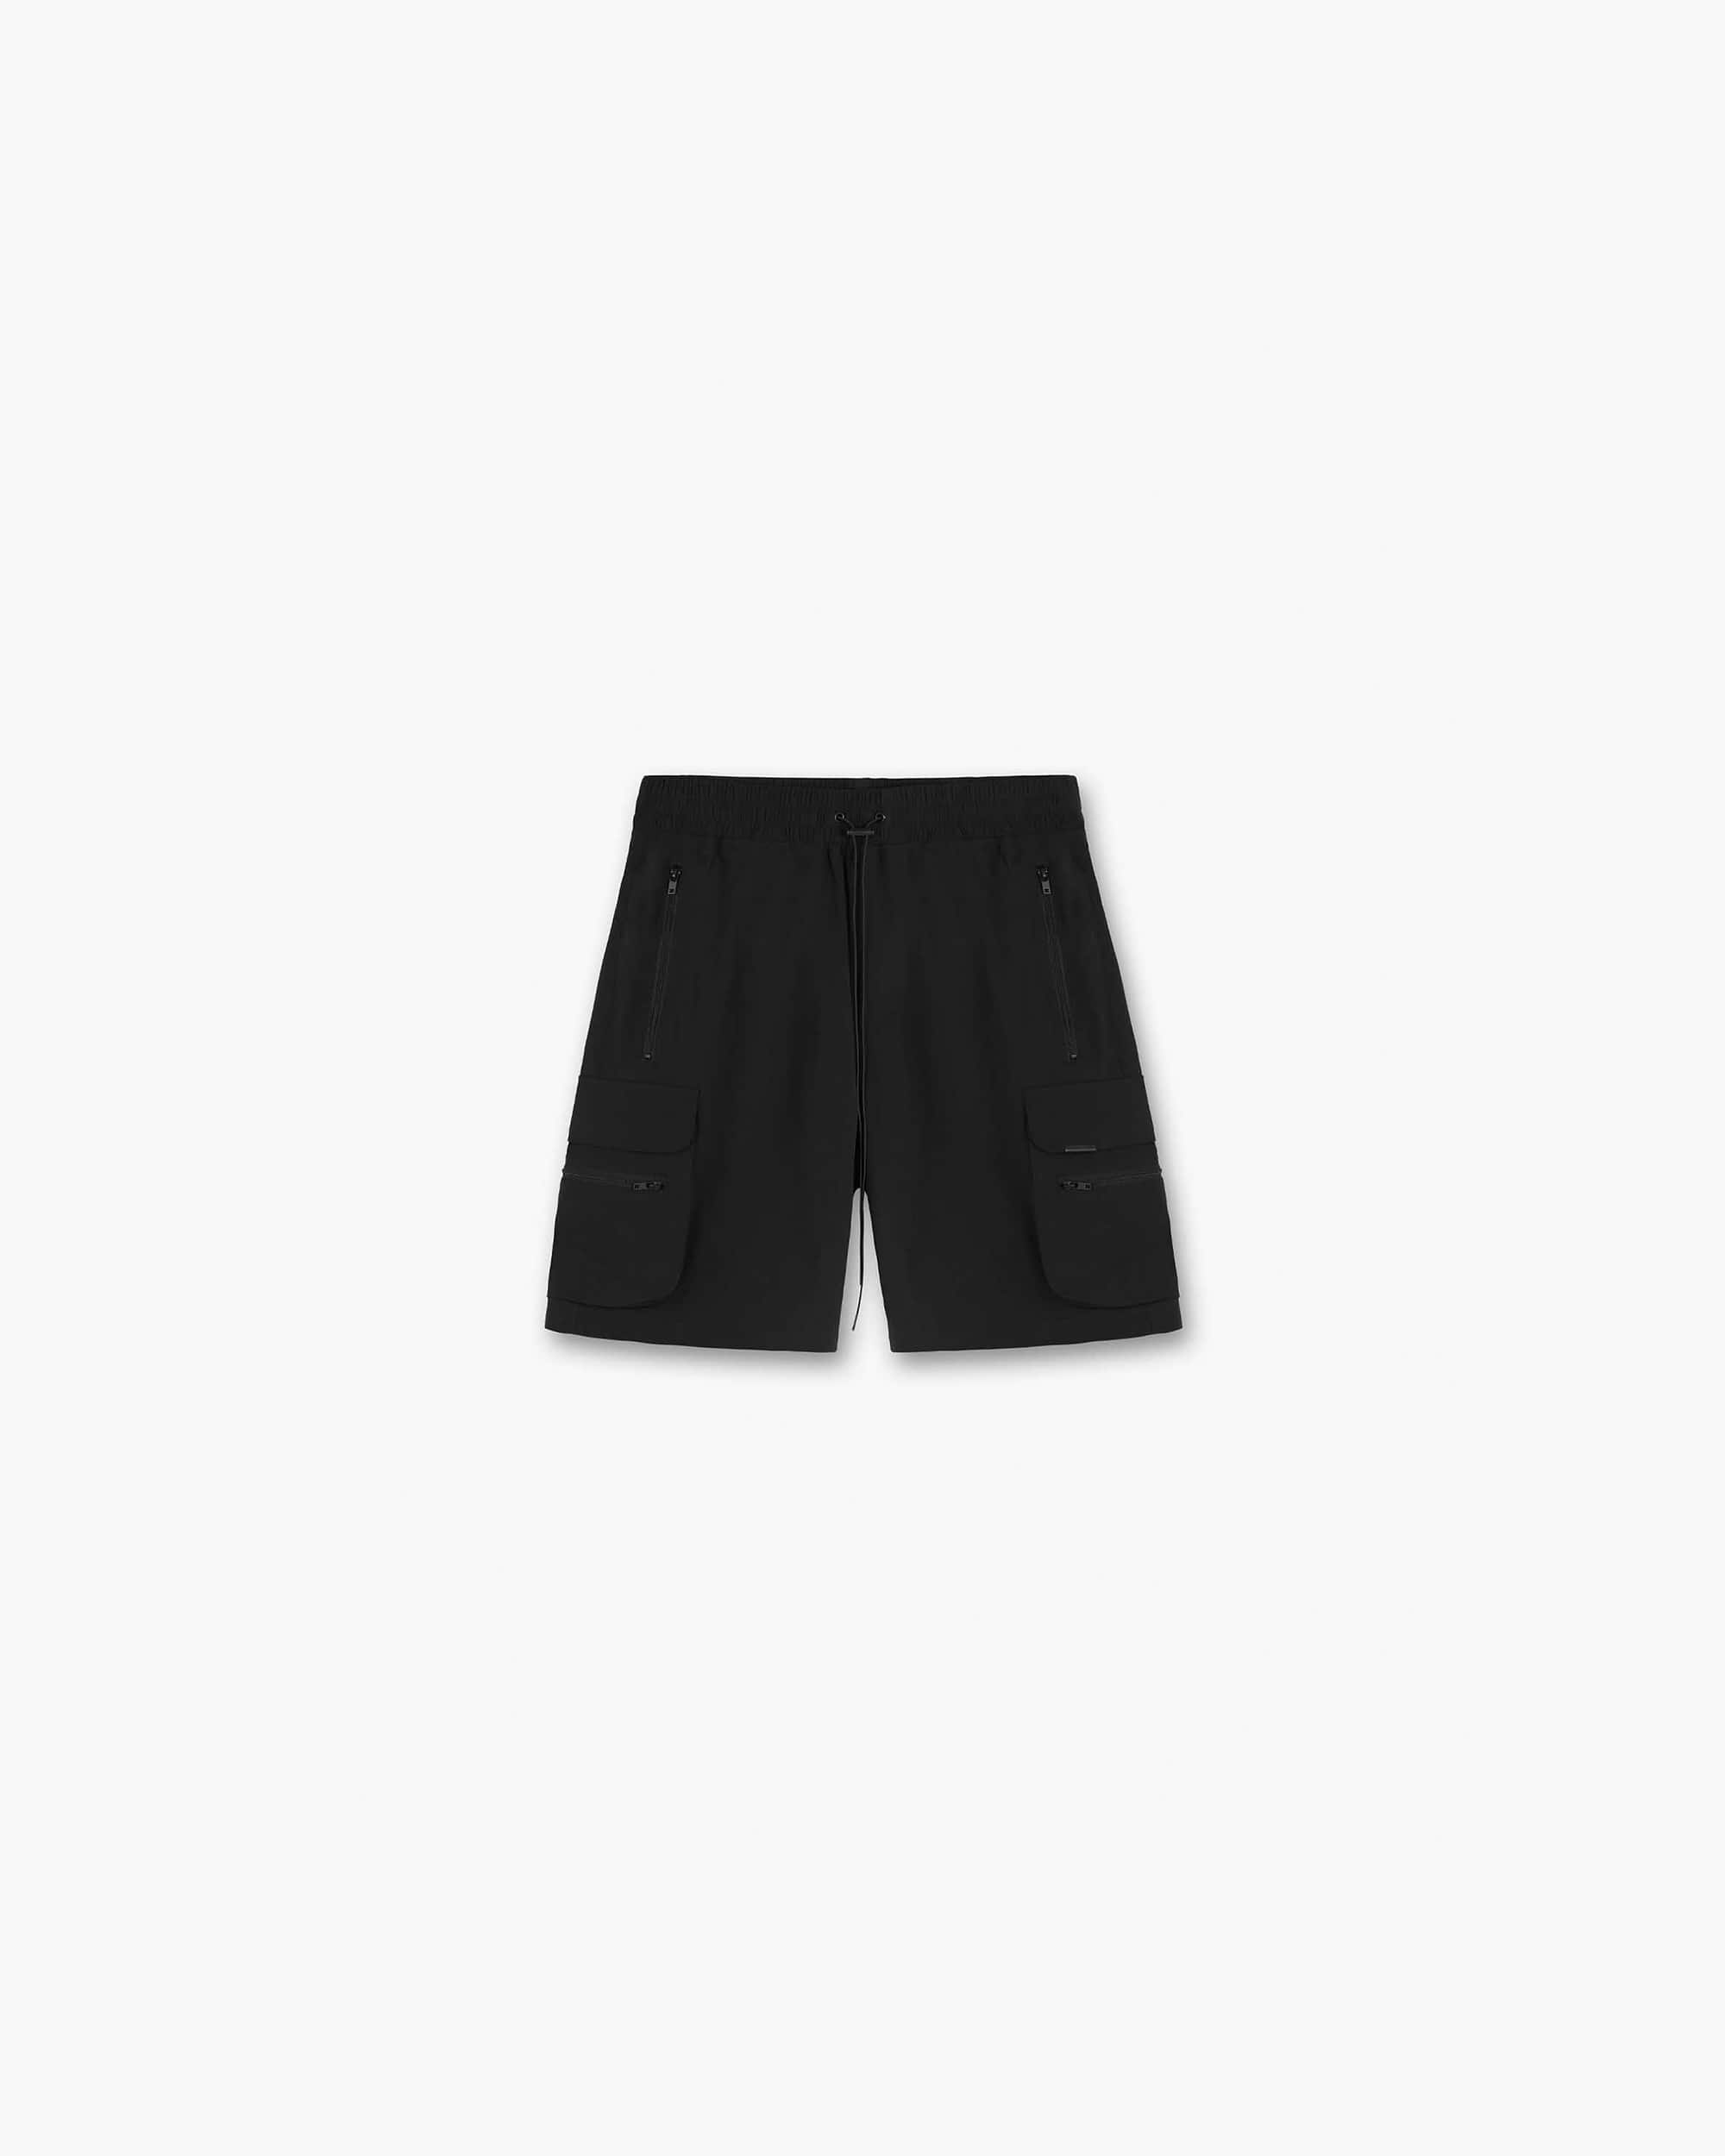 247 Shorts | Black Shorts 247 | Represent Clo